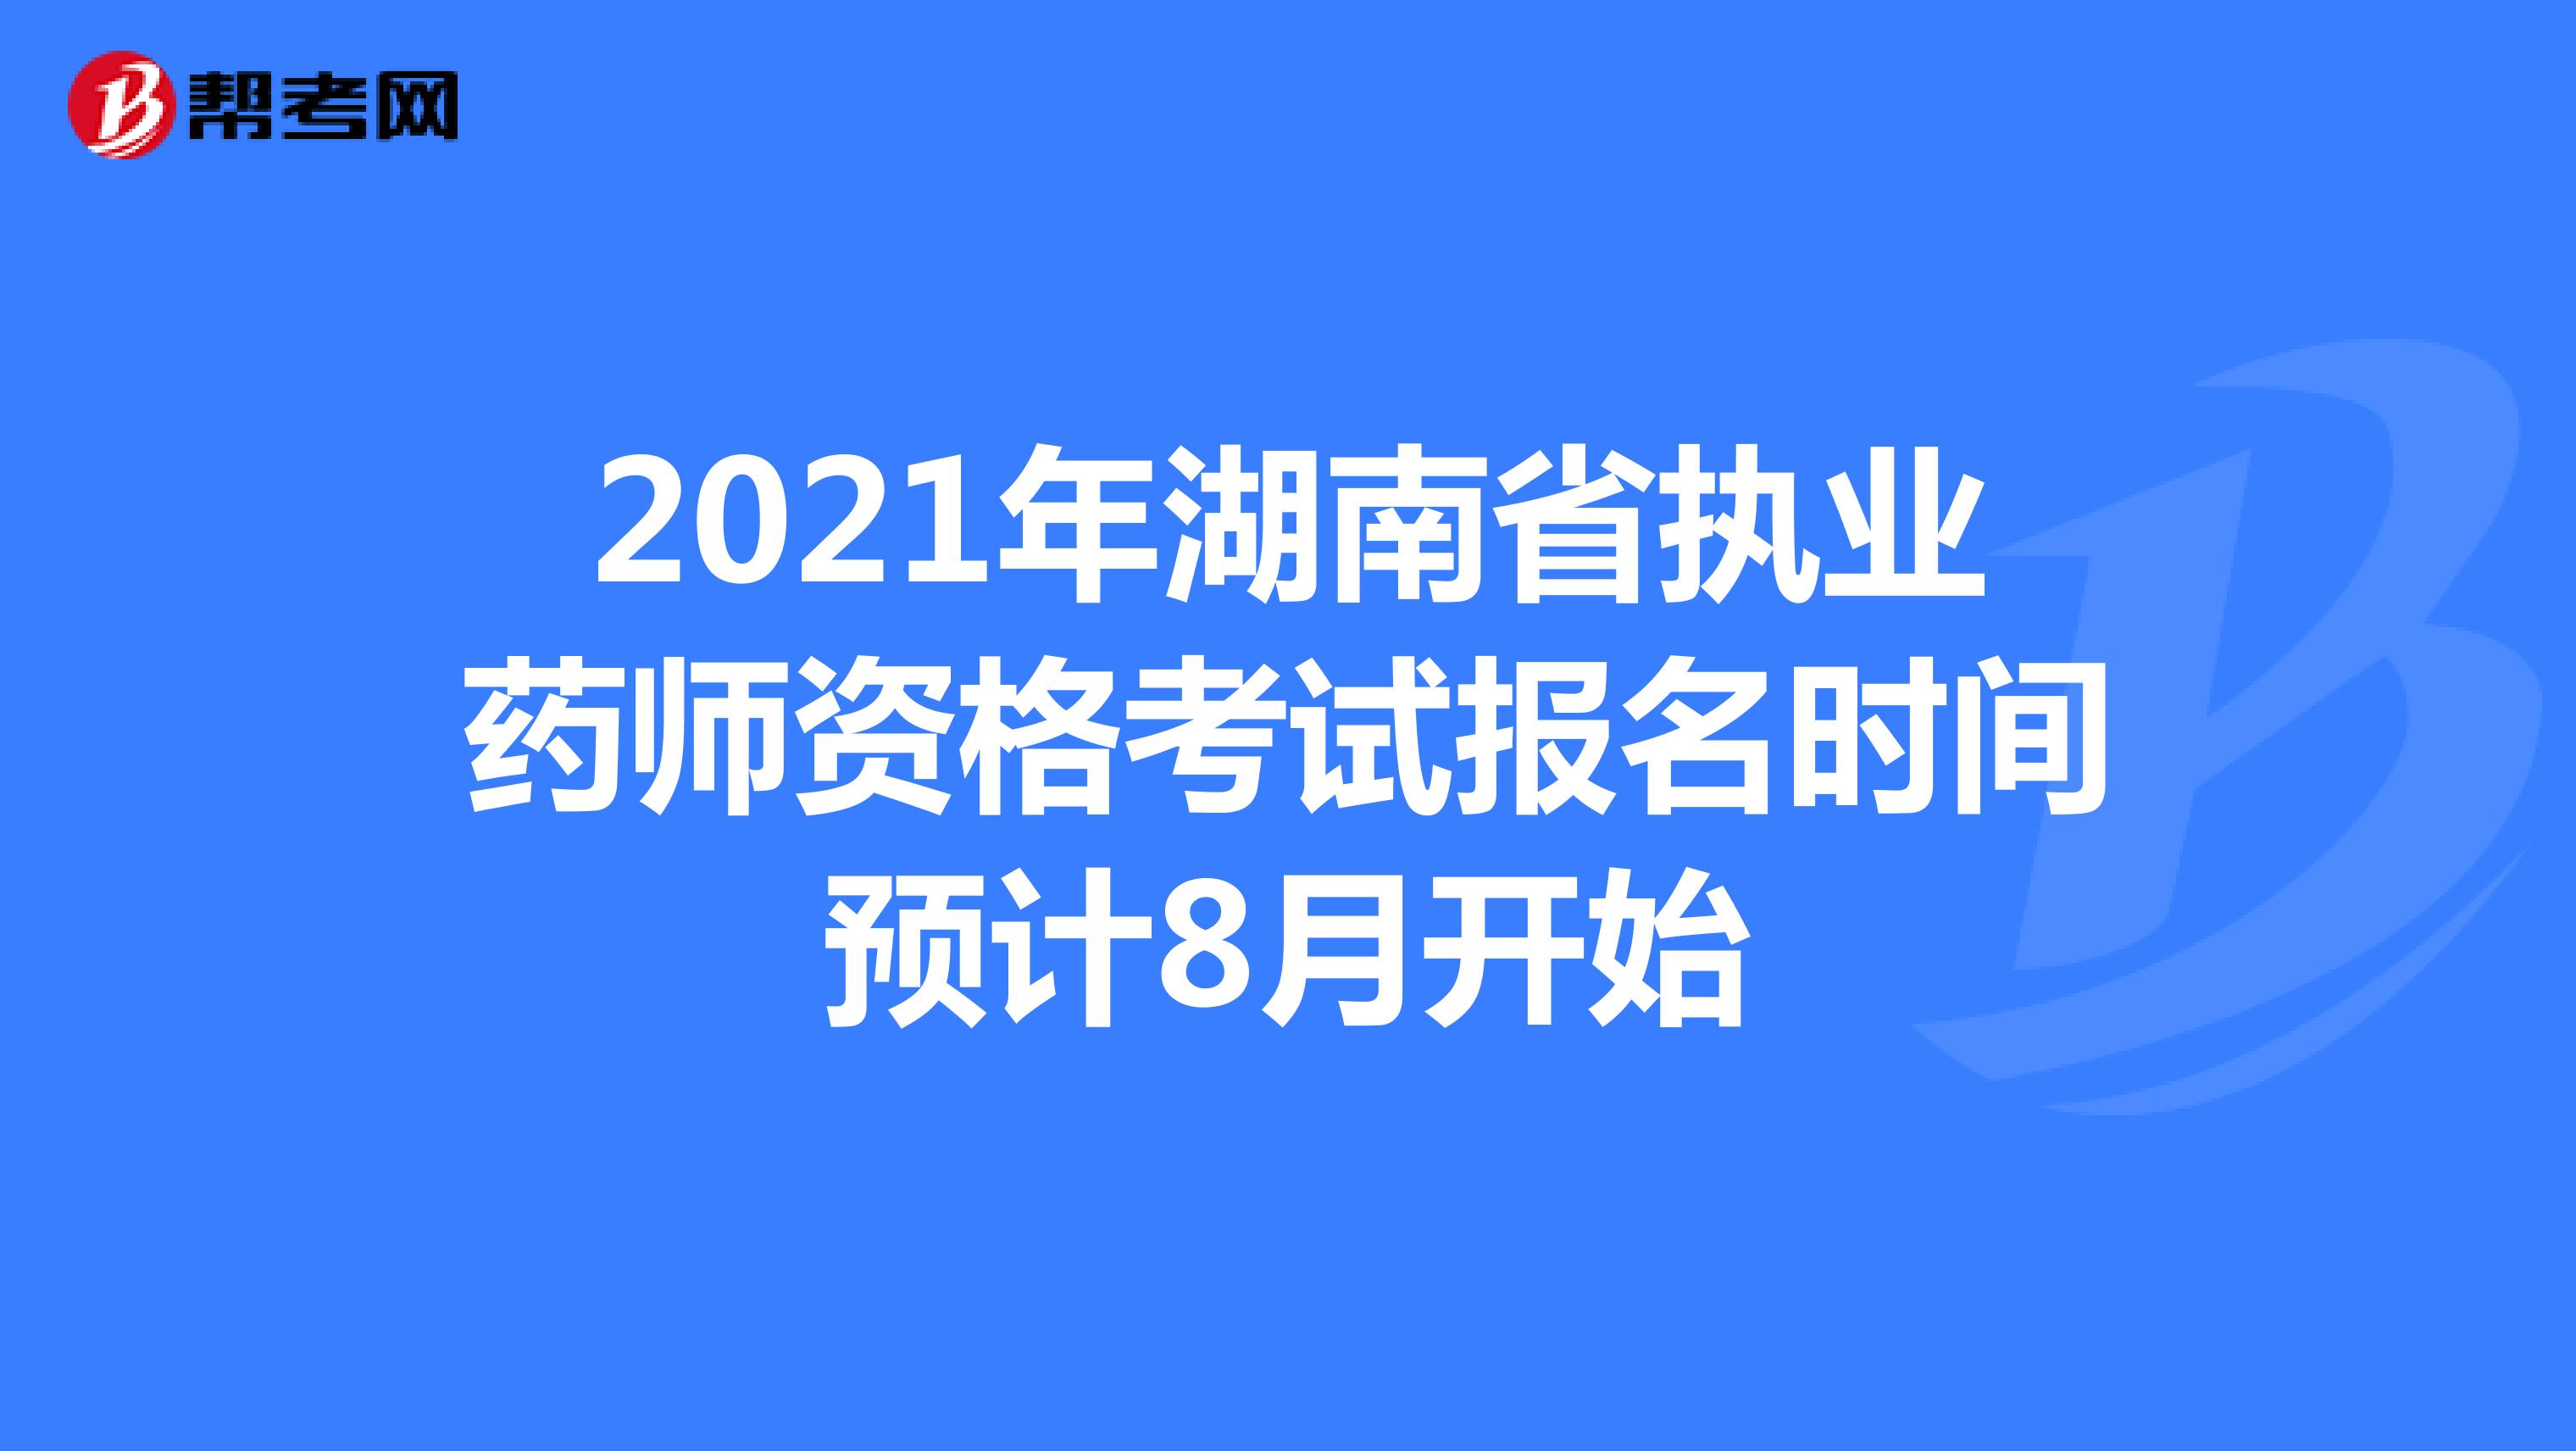 2021年湖南省执业药师资格考试报名时间预计8月开始